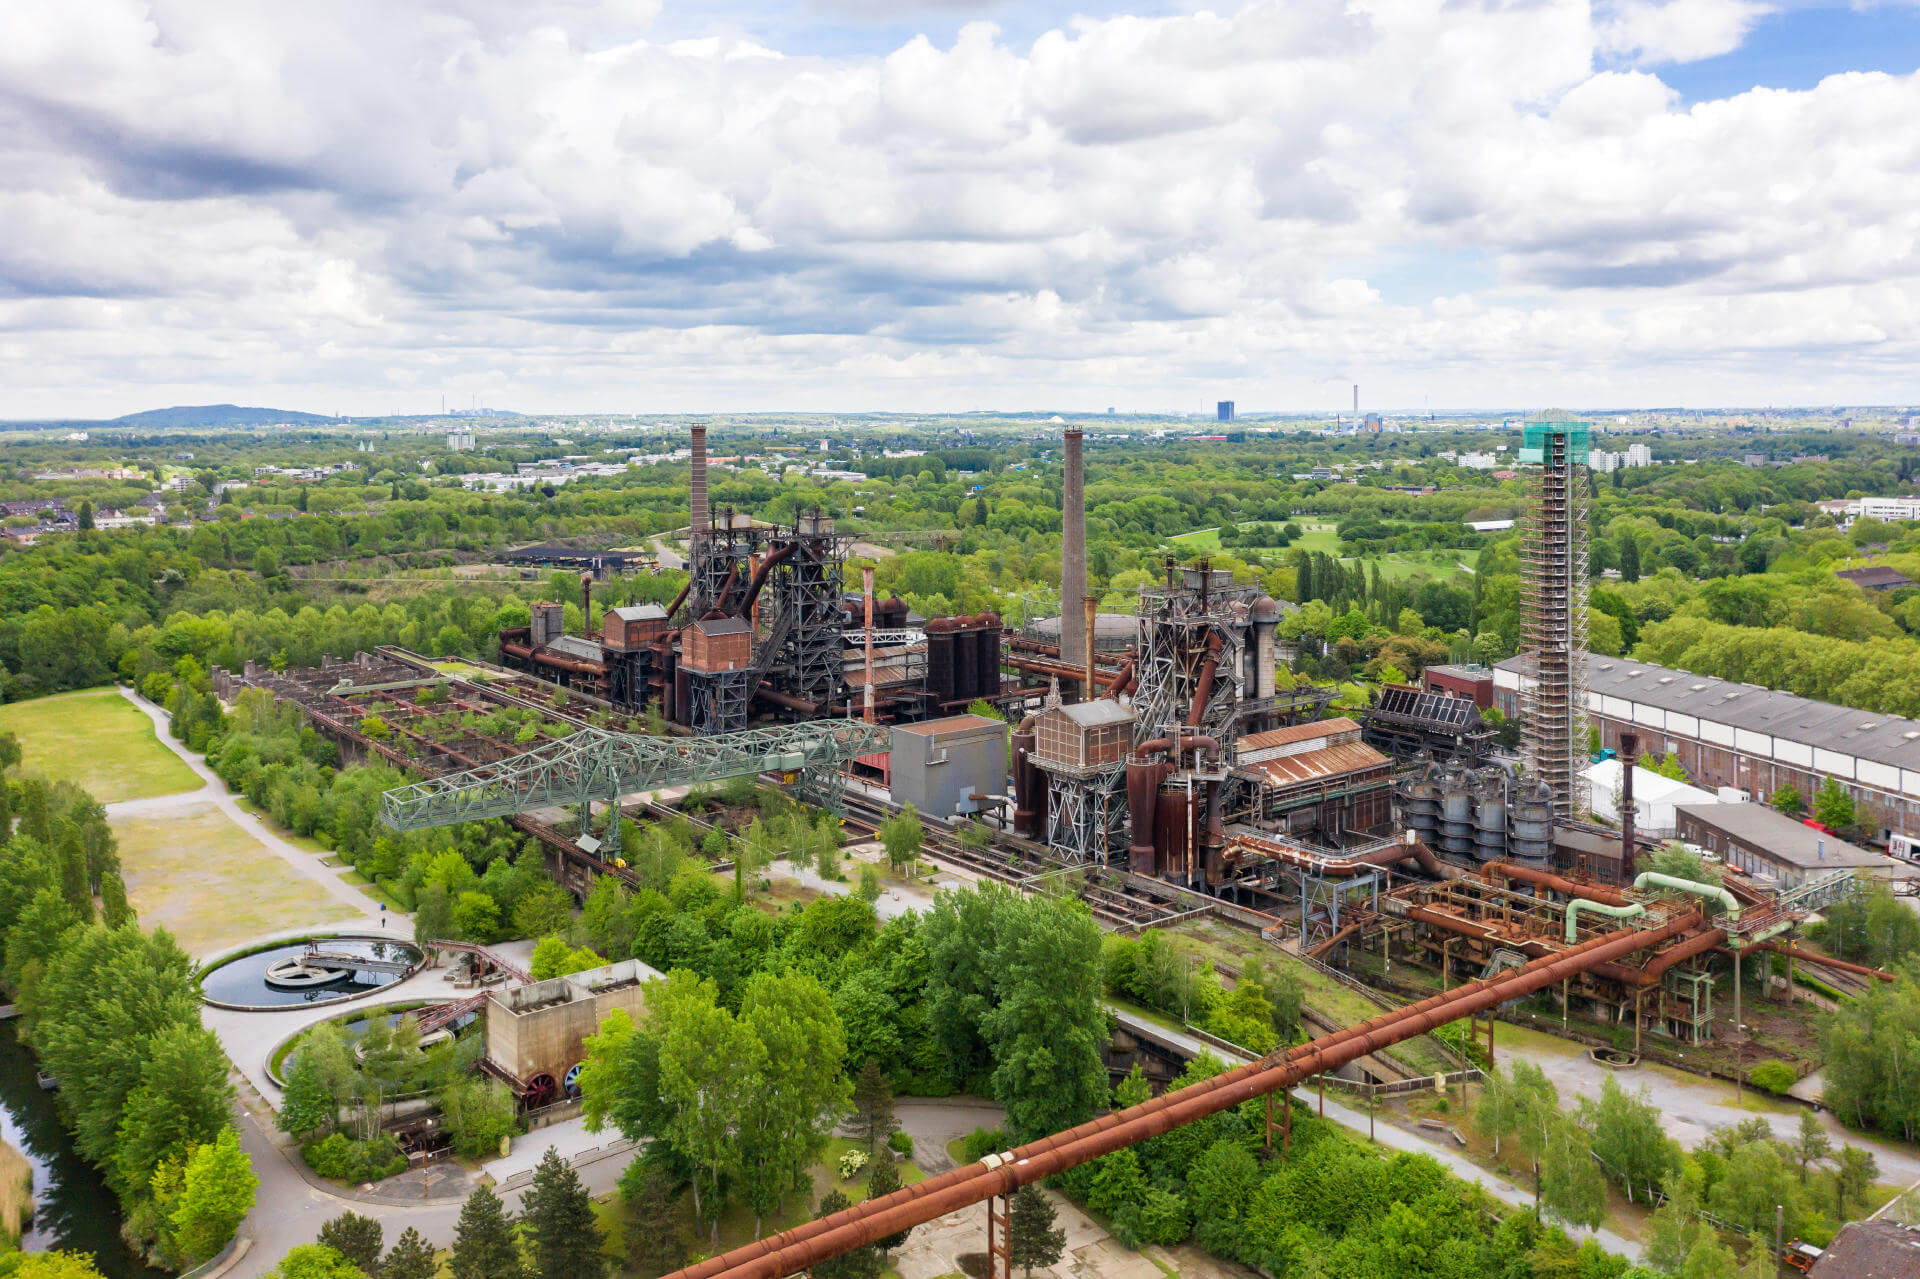 Kohlekraftwerk und alte Industriekultur im Ruhrgebiet macht den Pott zu einer spannenden Destination für euren Wochenendtrip.